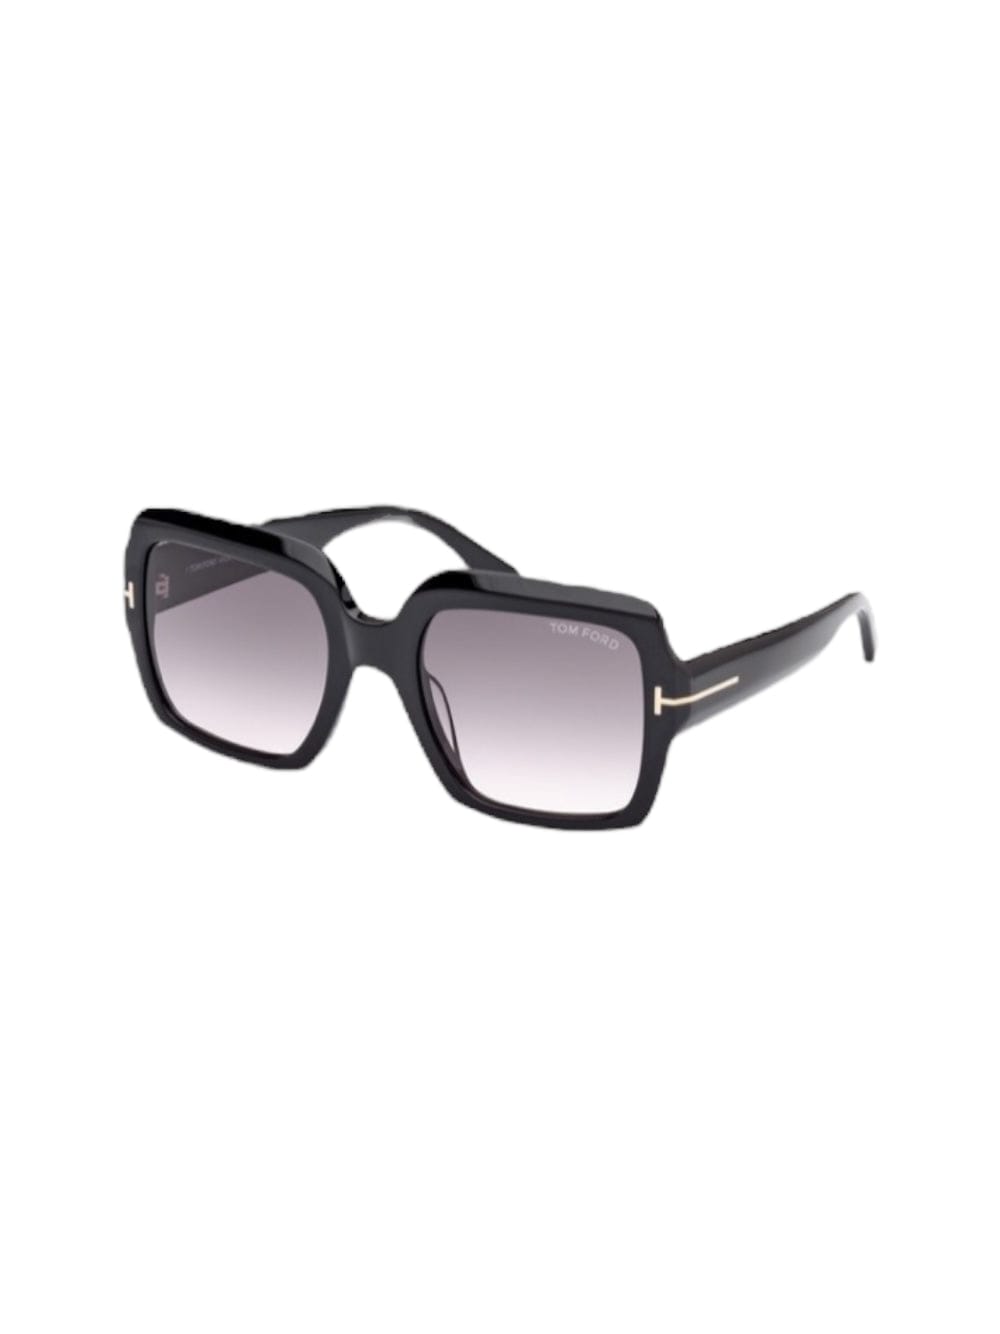 Ft 1082 /s Sunglasses